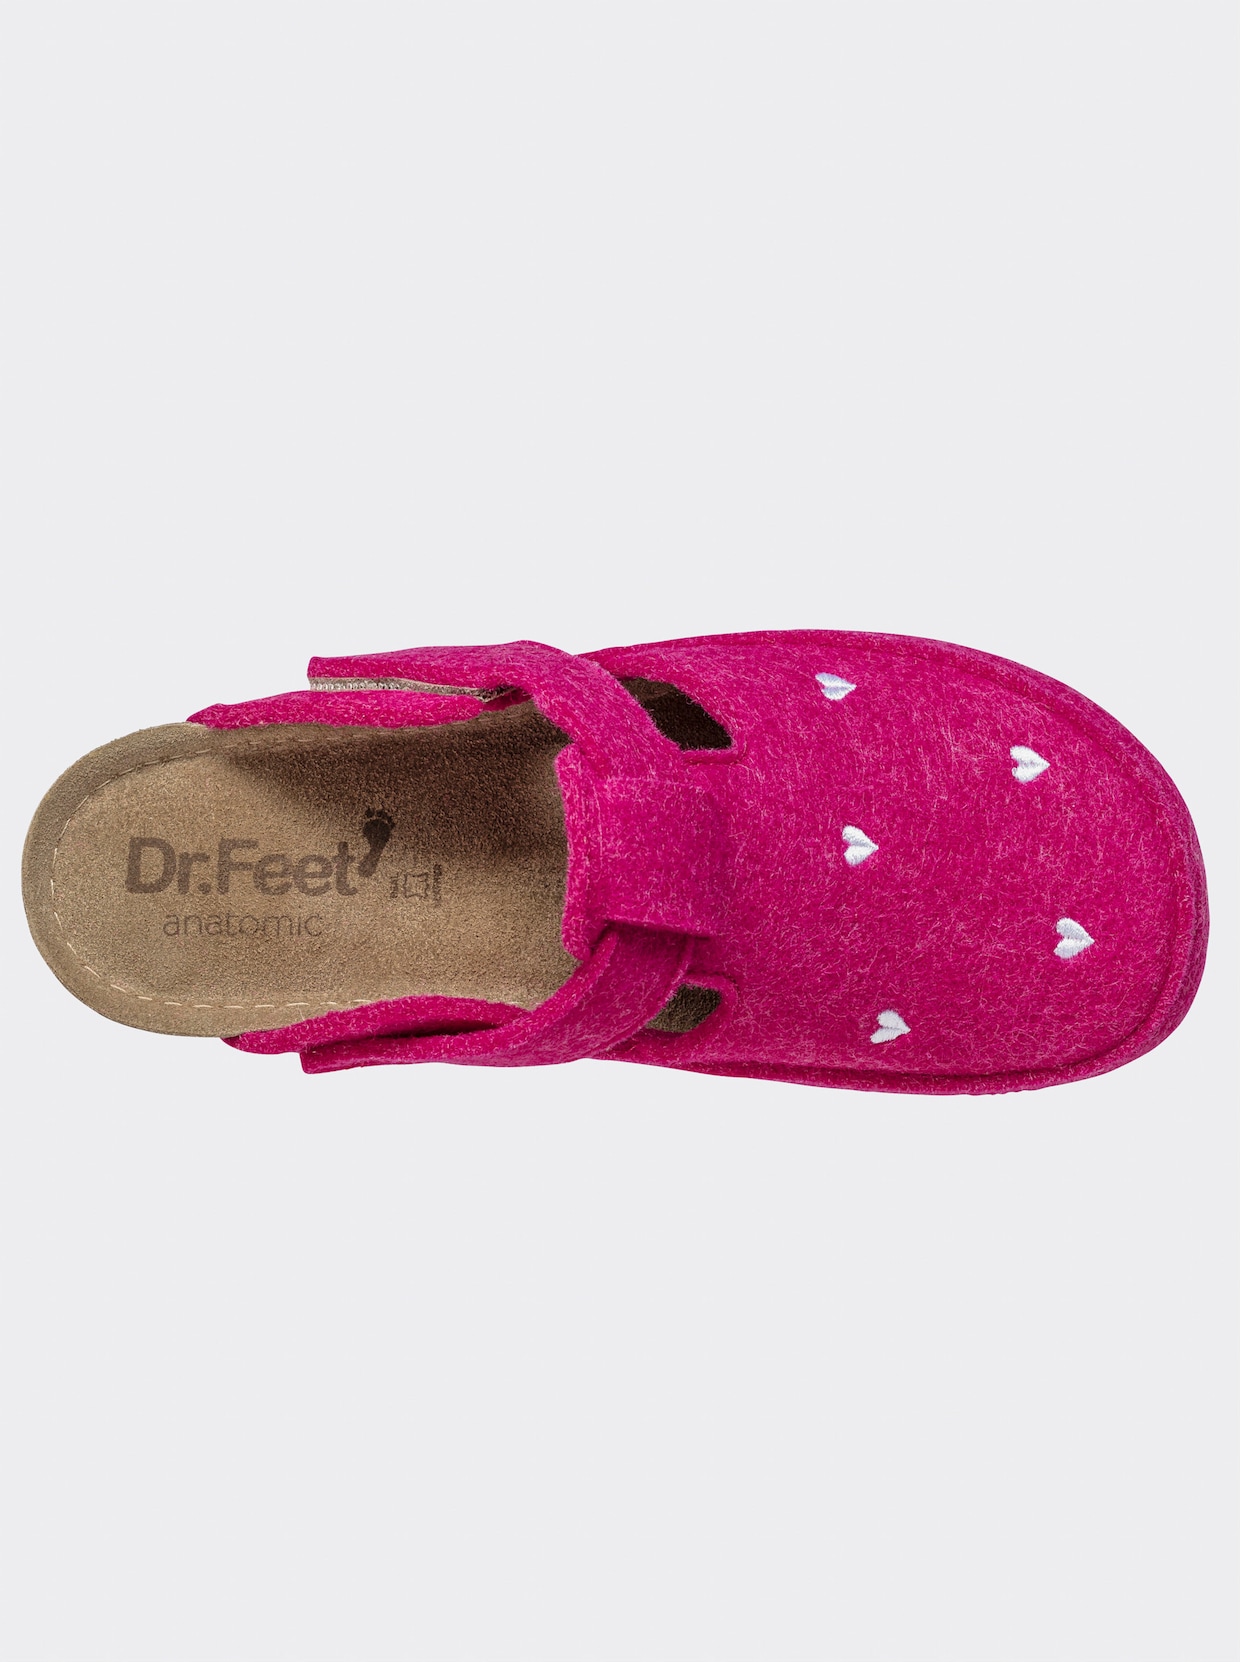 Dr. Feet Hausschuh - pink